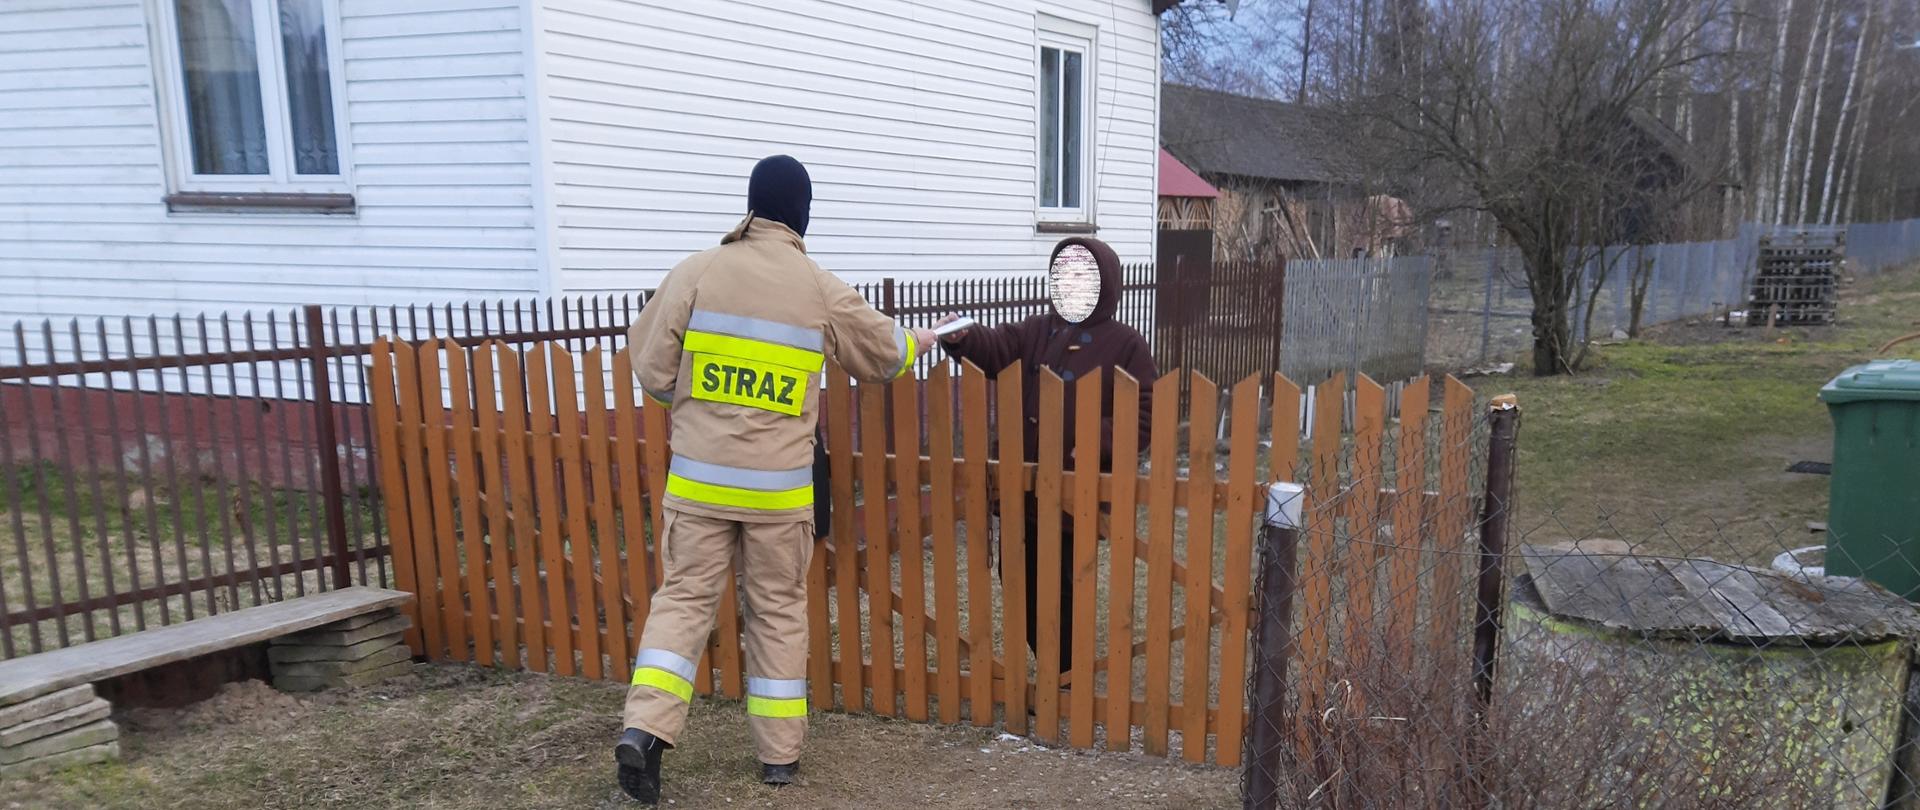 Strażak OSP podczas akcji dystrybucji ulotek informacyjnych na temat profilaktyki oraz szczepień przeciwko COVID-19. Strażak przekazuje ulotkę mieszkance jednej z miejscowości powiatu bielskiego.